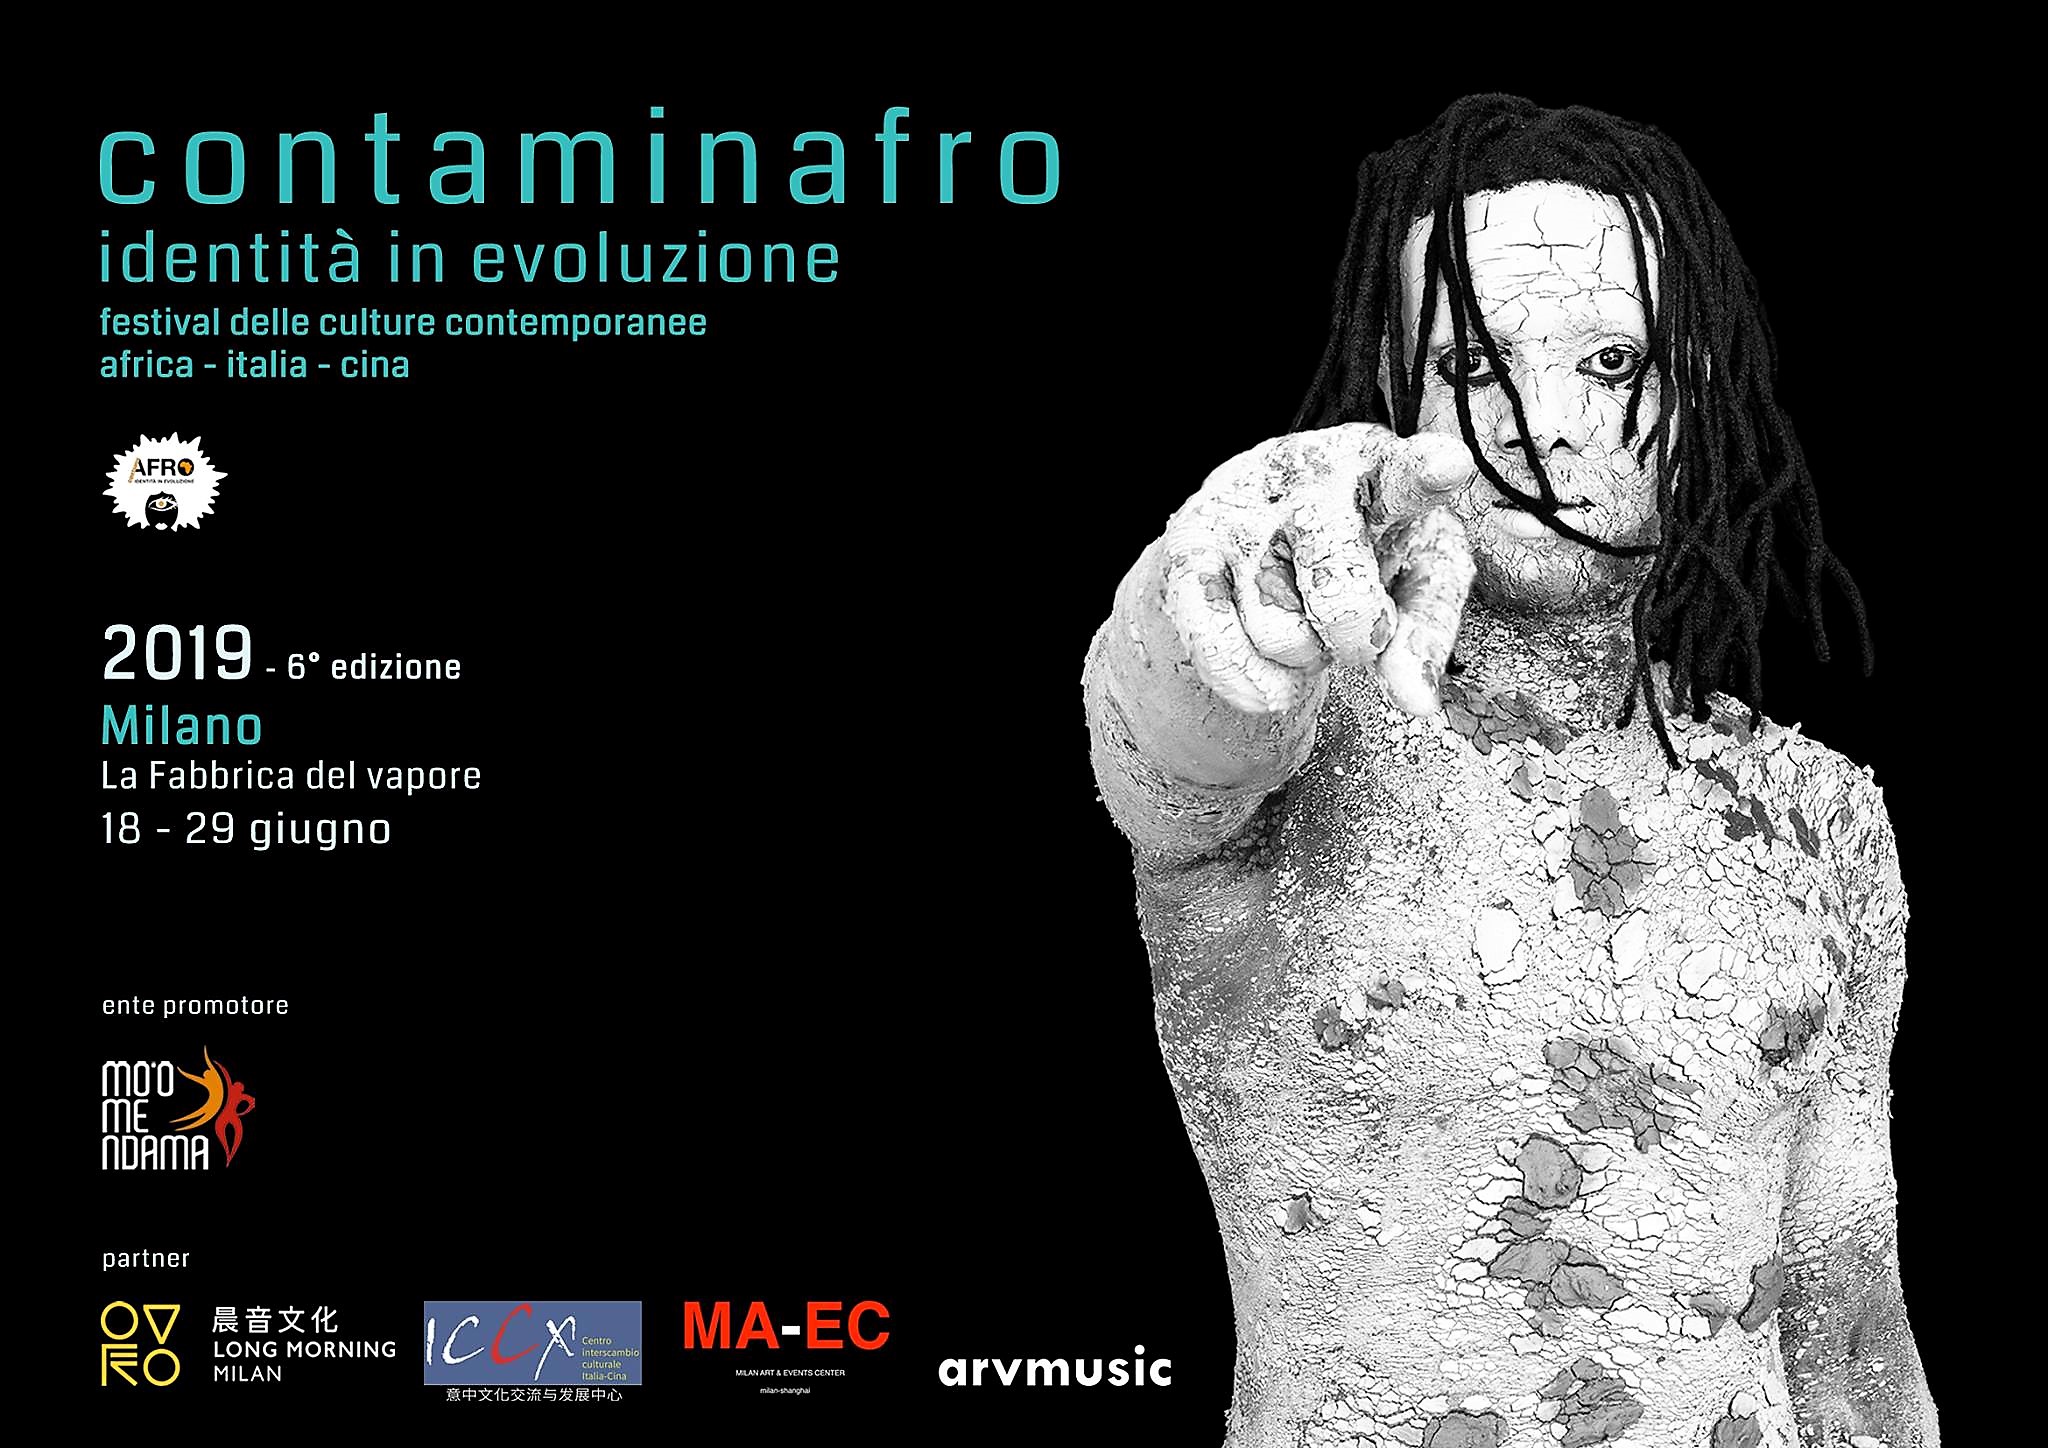 “Contaminafro, identità in evoluzione” a Milano dal 18 al 29 giugno 2019